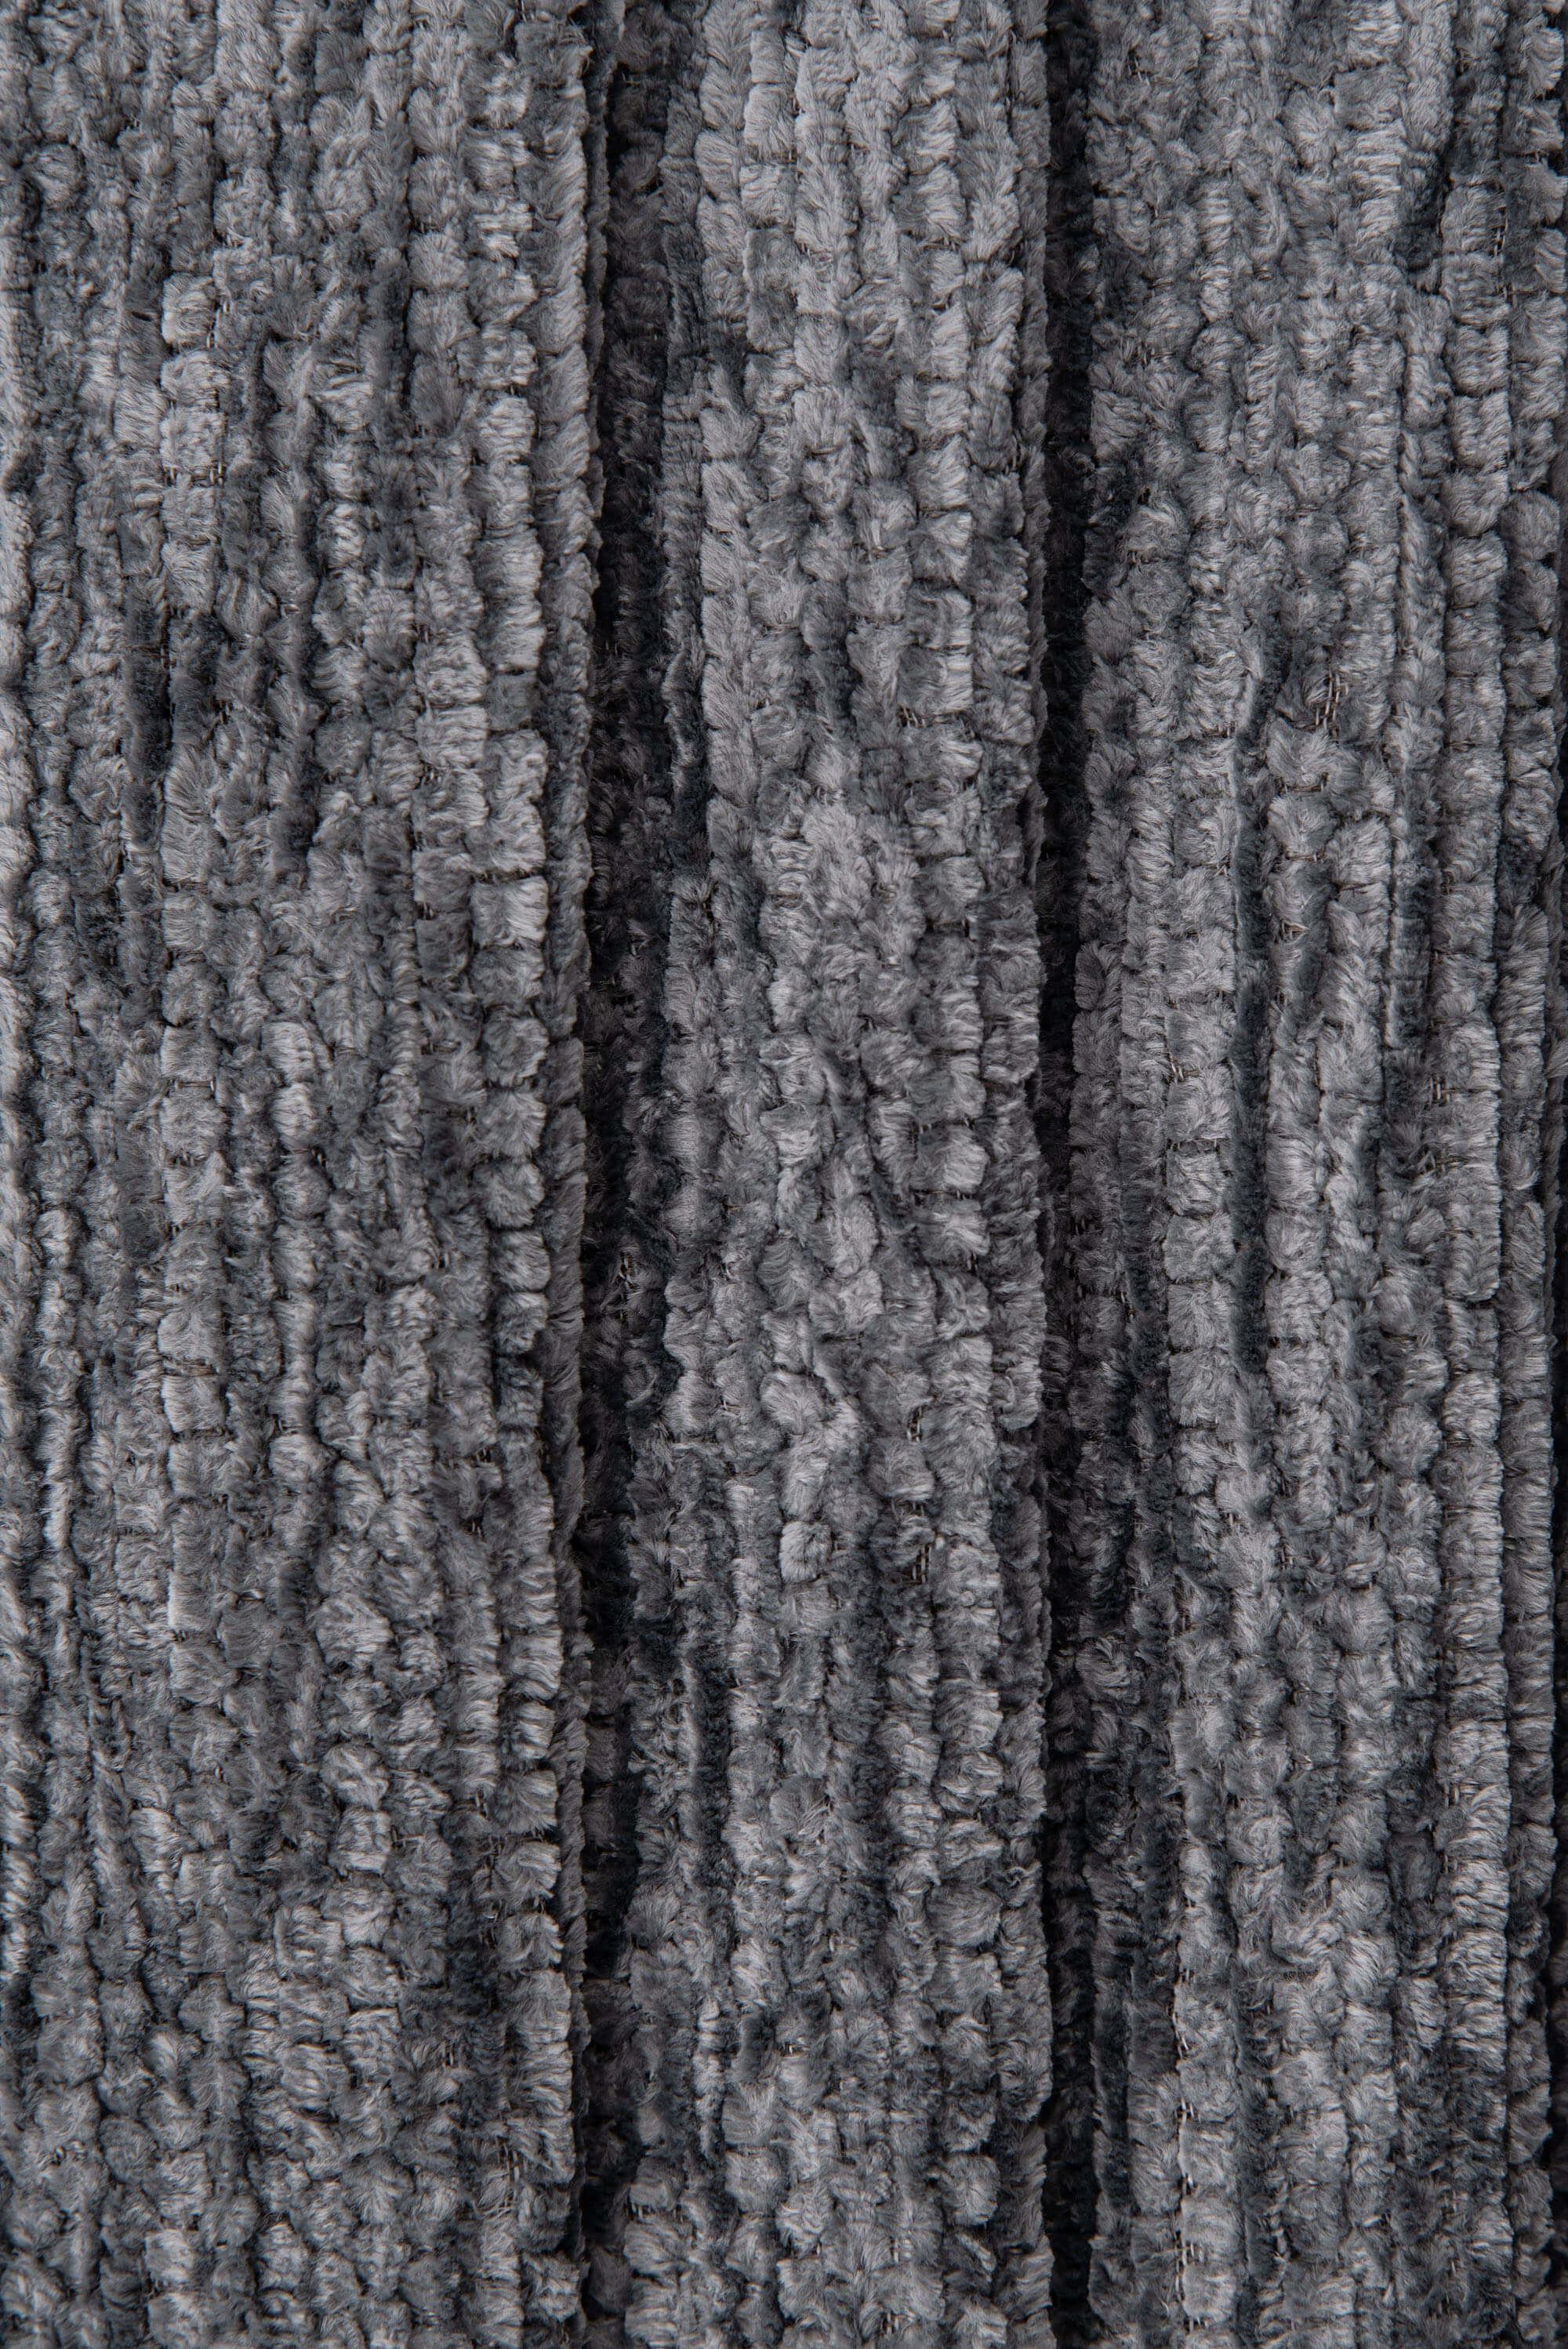 DM 1001 Cotton Gray Reflective Fabric (400 cd/lux) - TG Tekstil